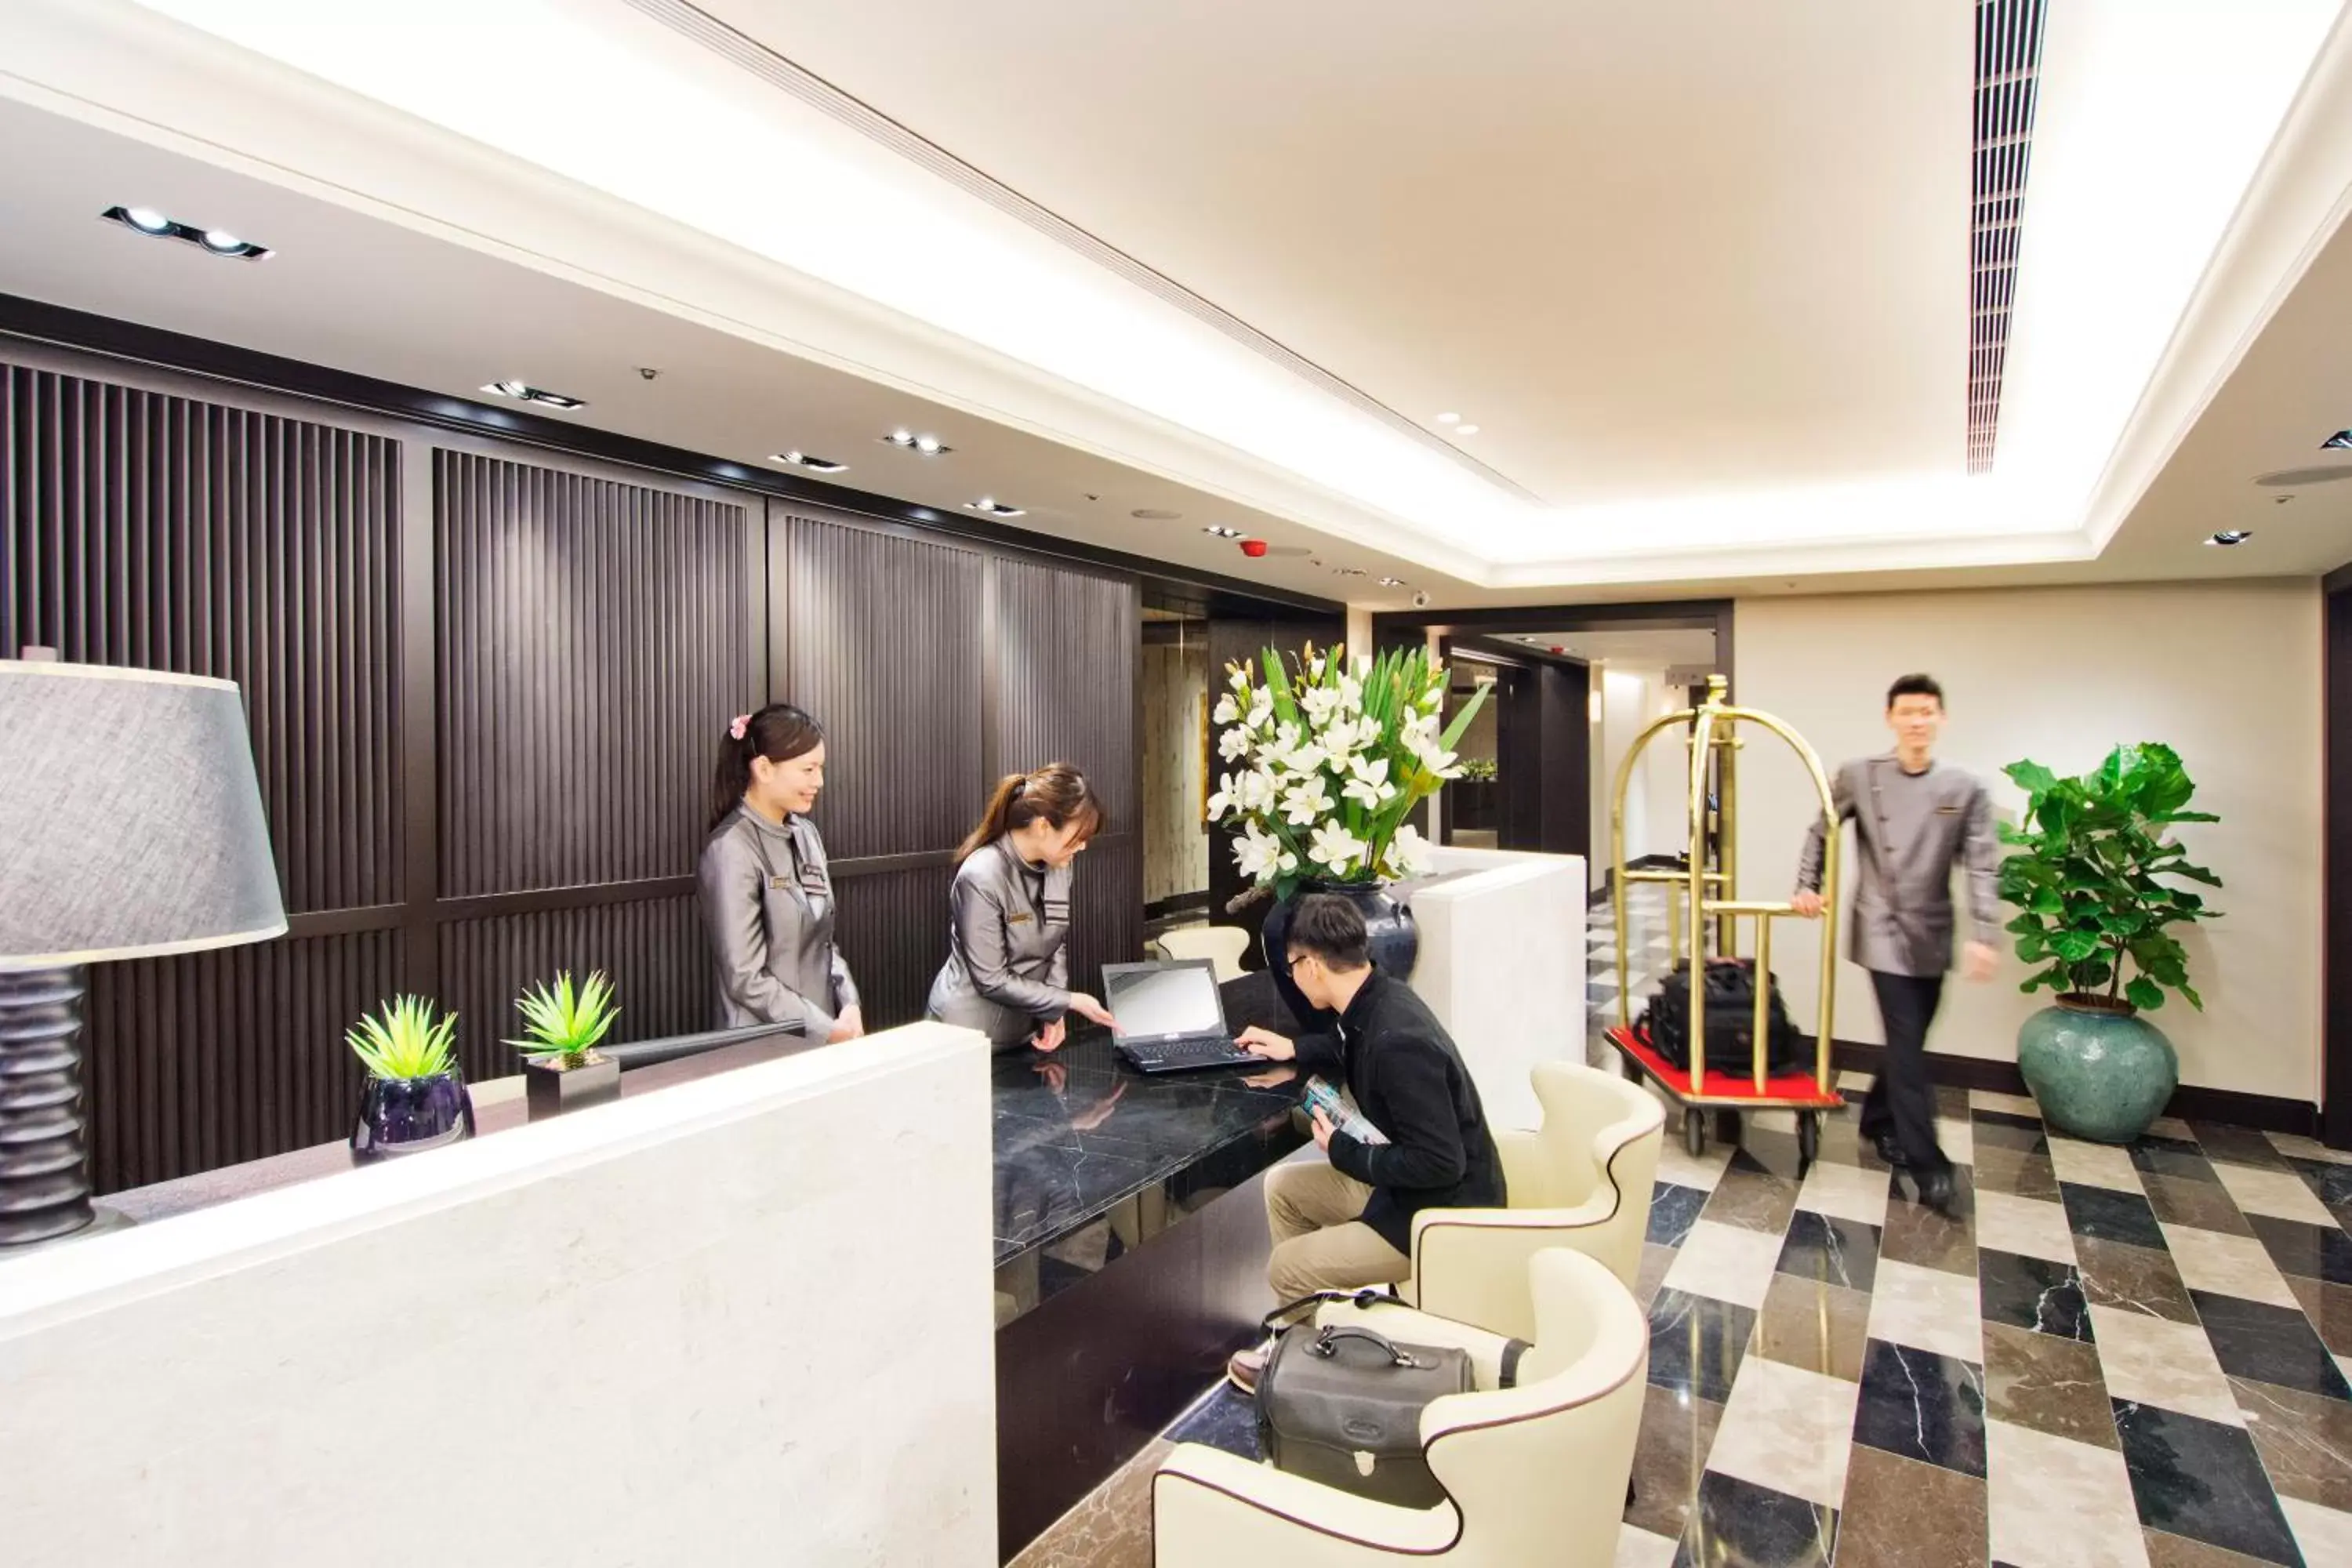 Lobby or reception, Lobby/Reception in 53 Hotel